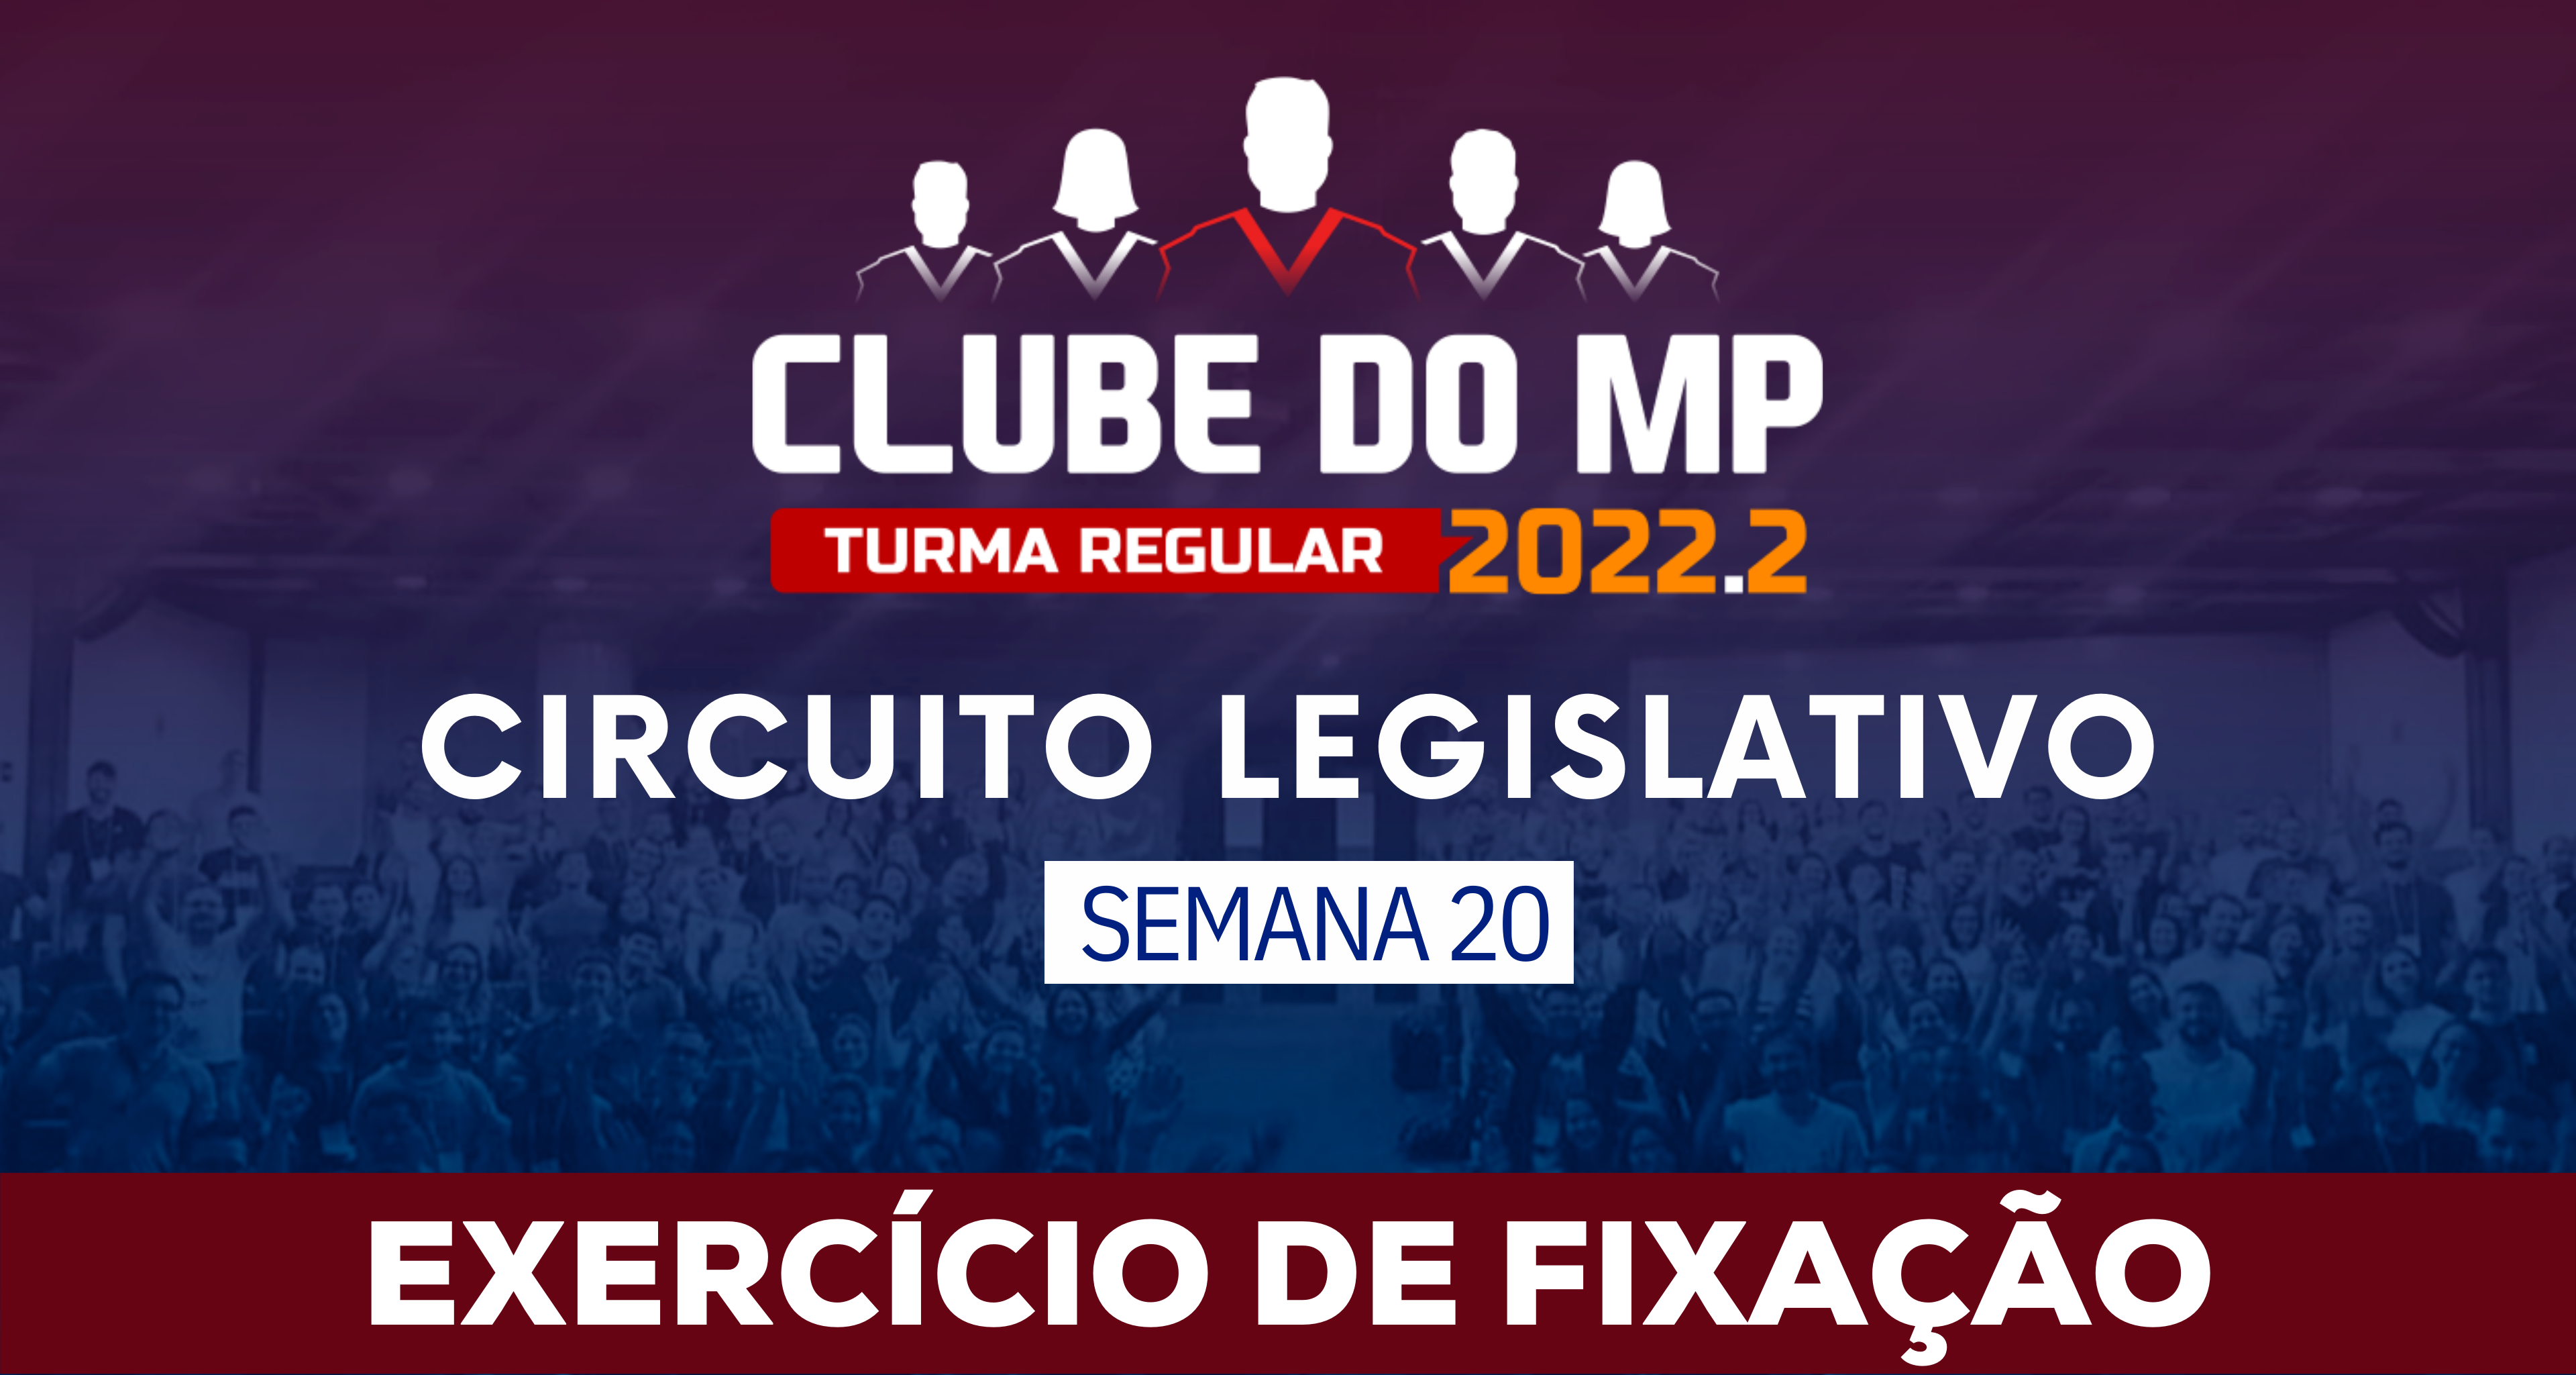 Circuito Legislativo 2022.2 (Clube do MP - Semana 20)